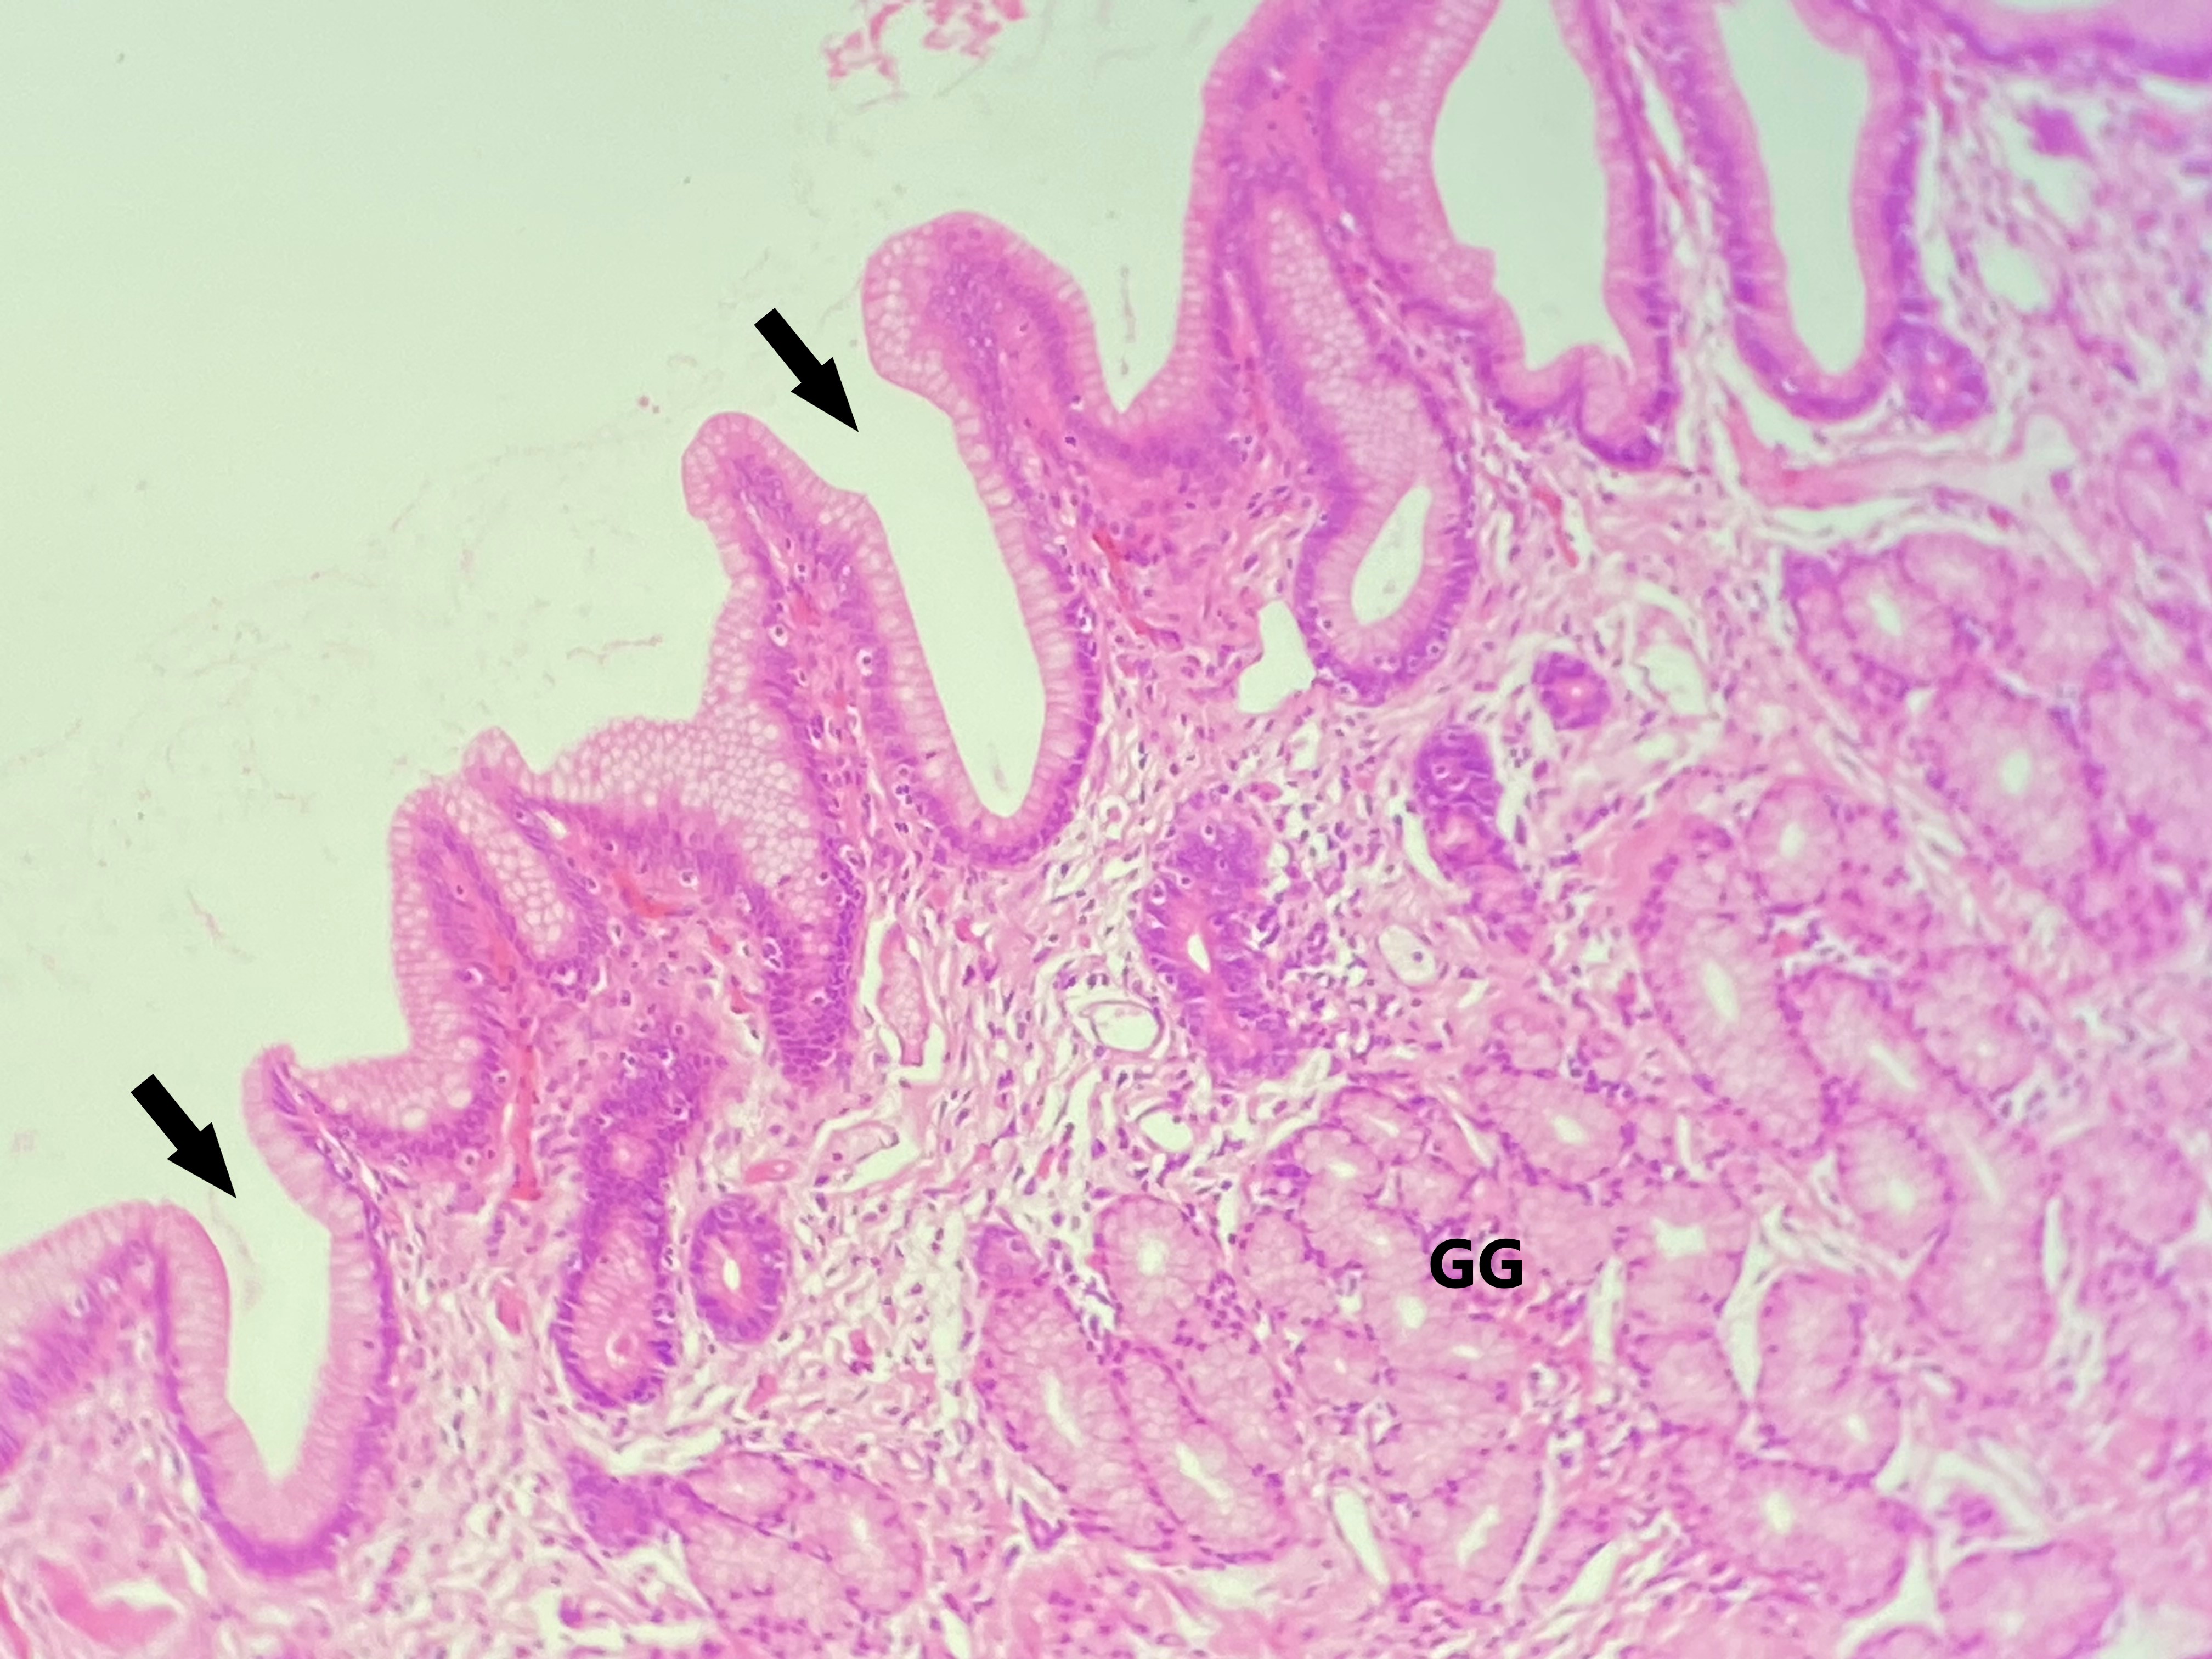 Lâmina: Estômago (H&E - Aumento: 200x). A fotomicrografia exibe um corte do estômago, revestido internamente por um epitélio simples colunar. As setas apontam para as fossetas gástricas e é possível observar parte das glândulas gástricas (GG) na mucosa.